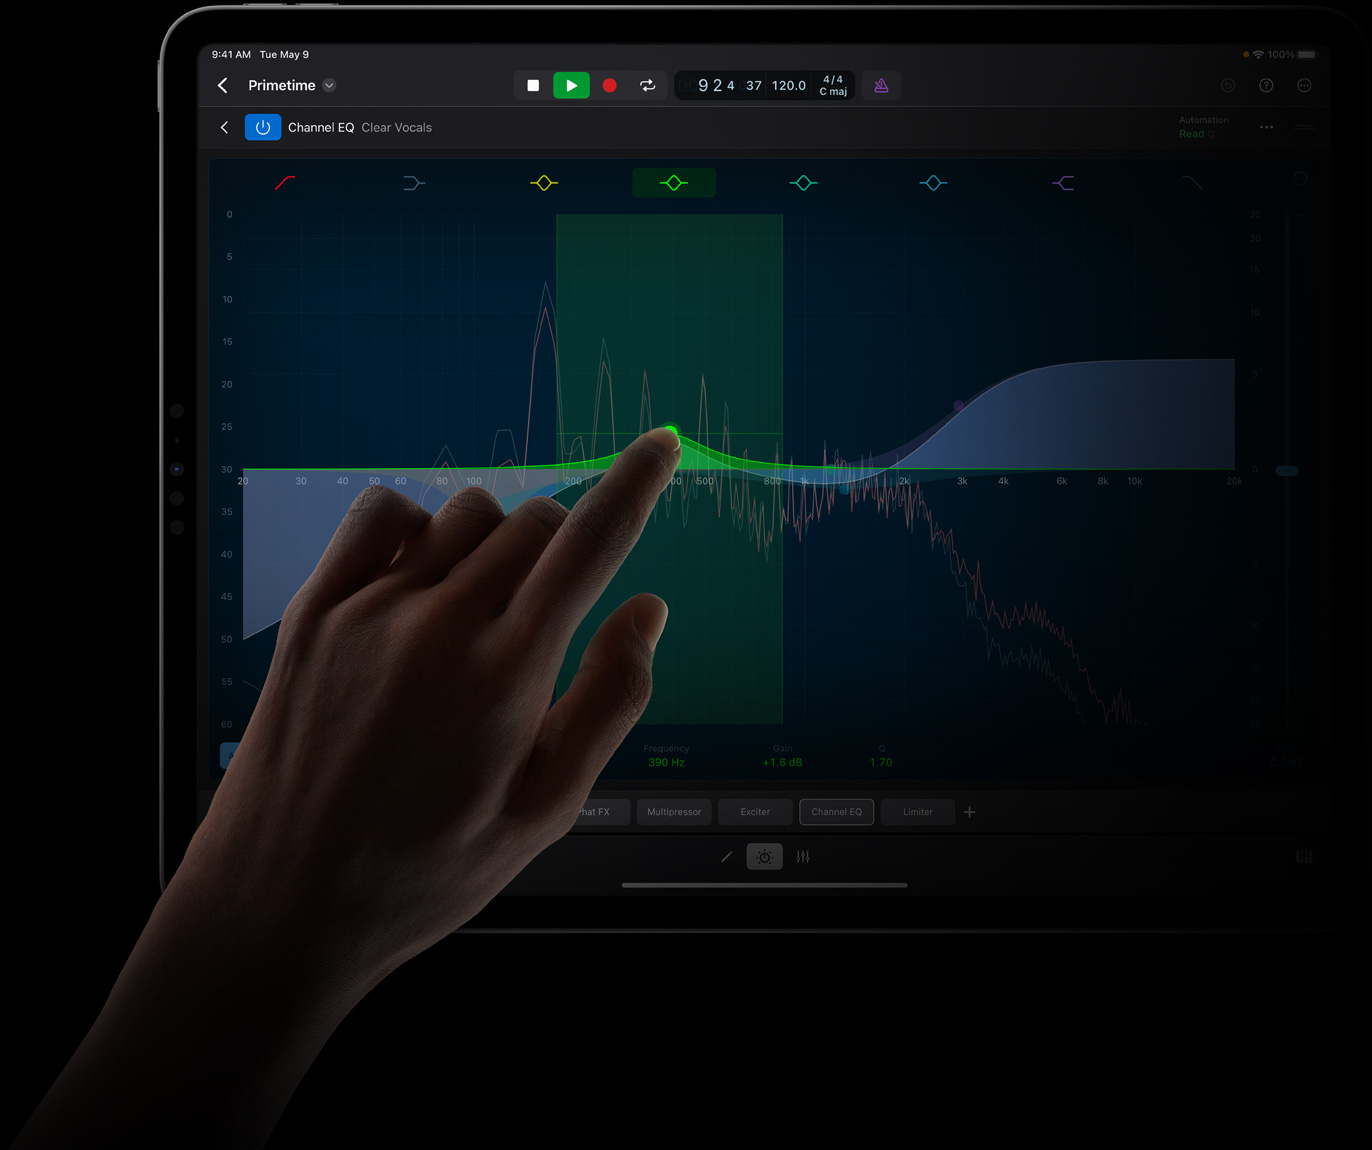 一只手点触 iPad Pro 屏幕，在 iPad Pro 上的 iPad 版 Logic Pro 中进行声音波形编辑。